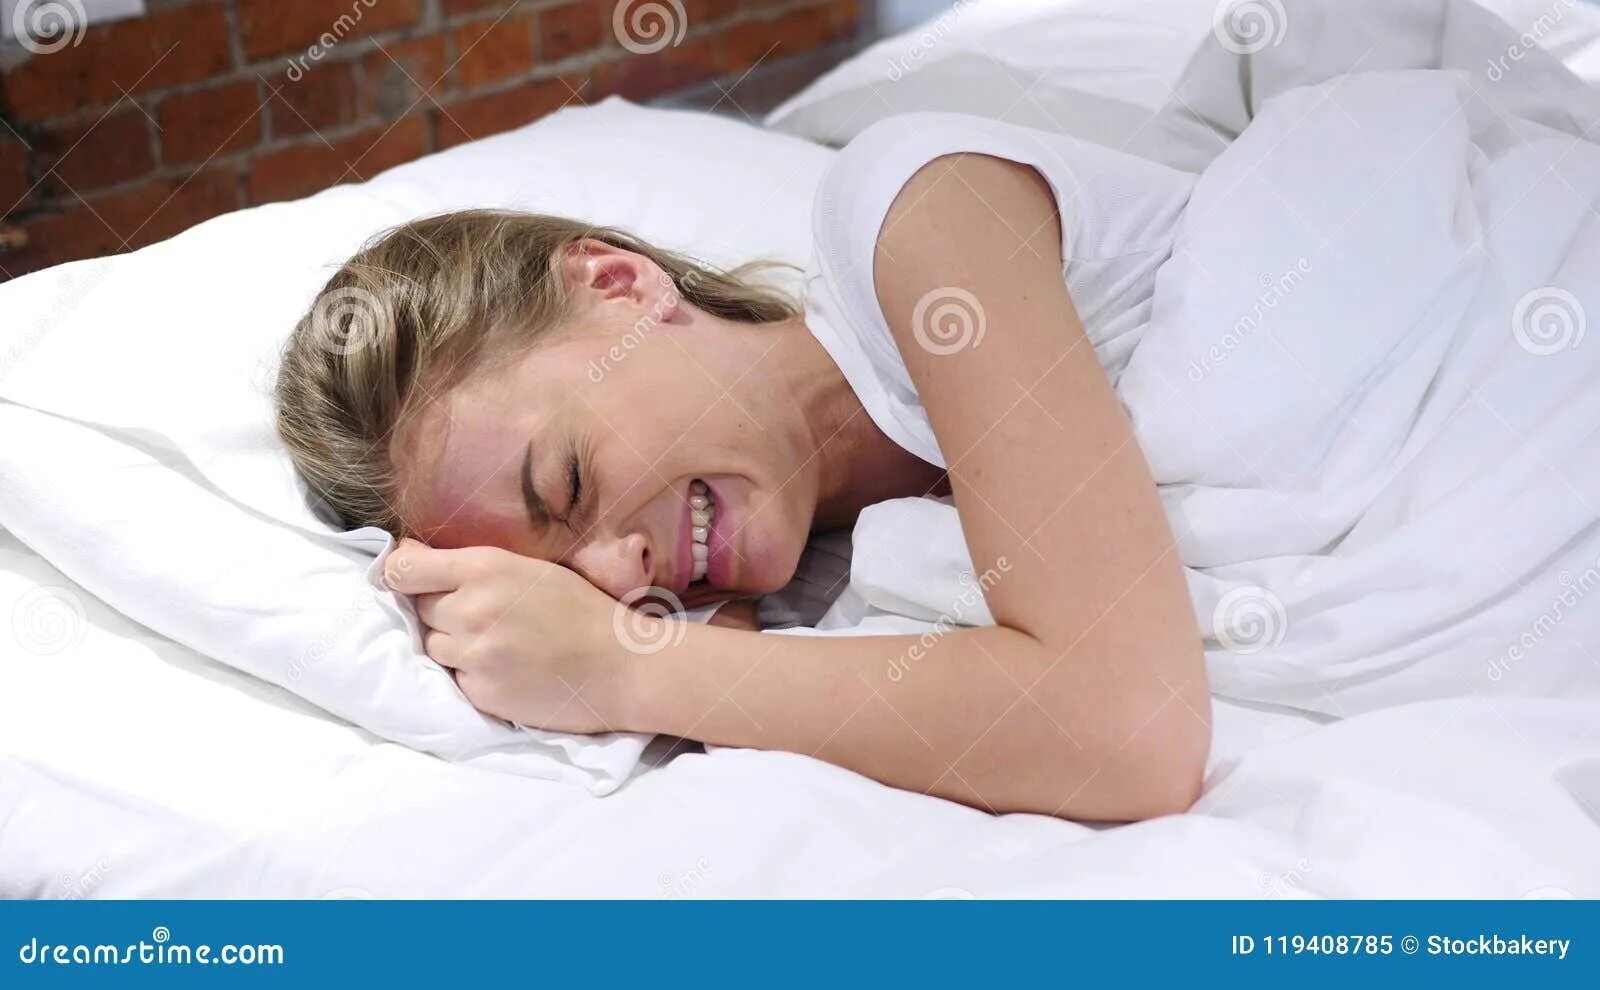 Плач в подушку. Женщина лежит в постели. Плачет в подушку. Молодая увидела спящего